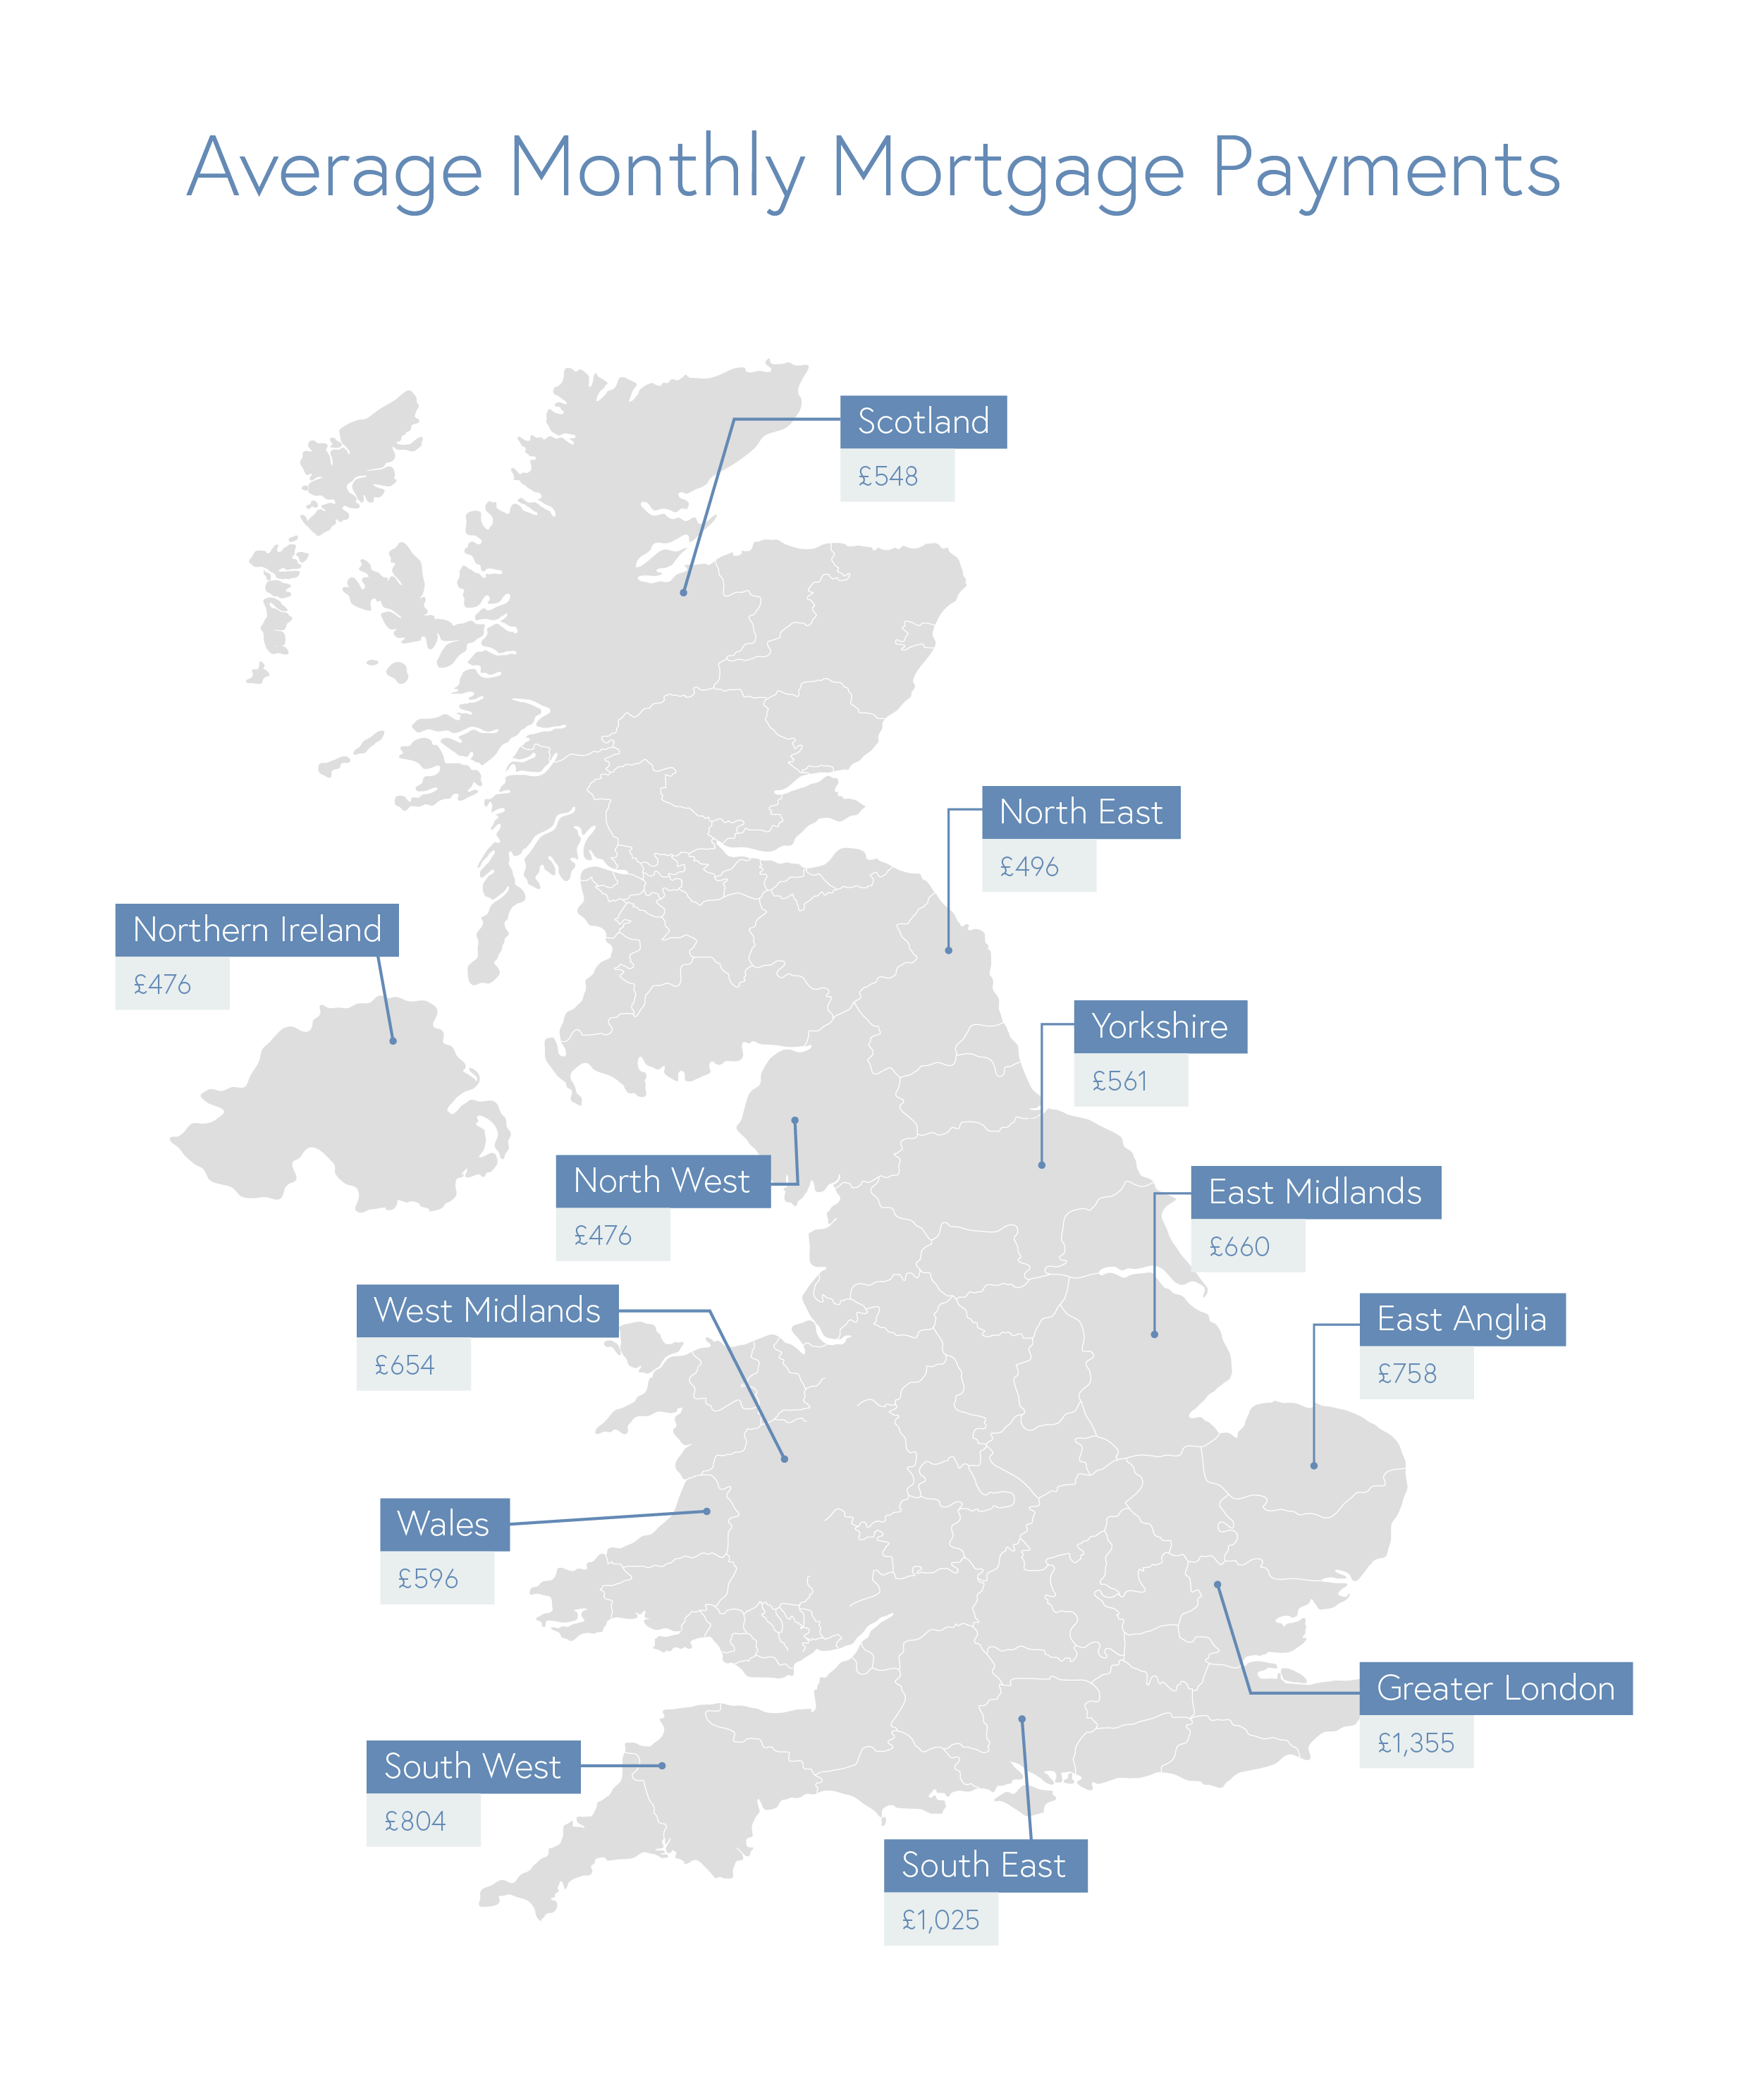 average mortgage payment based on UK region